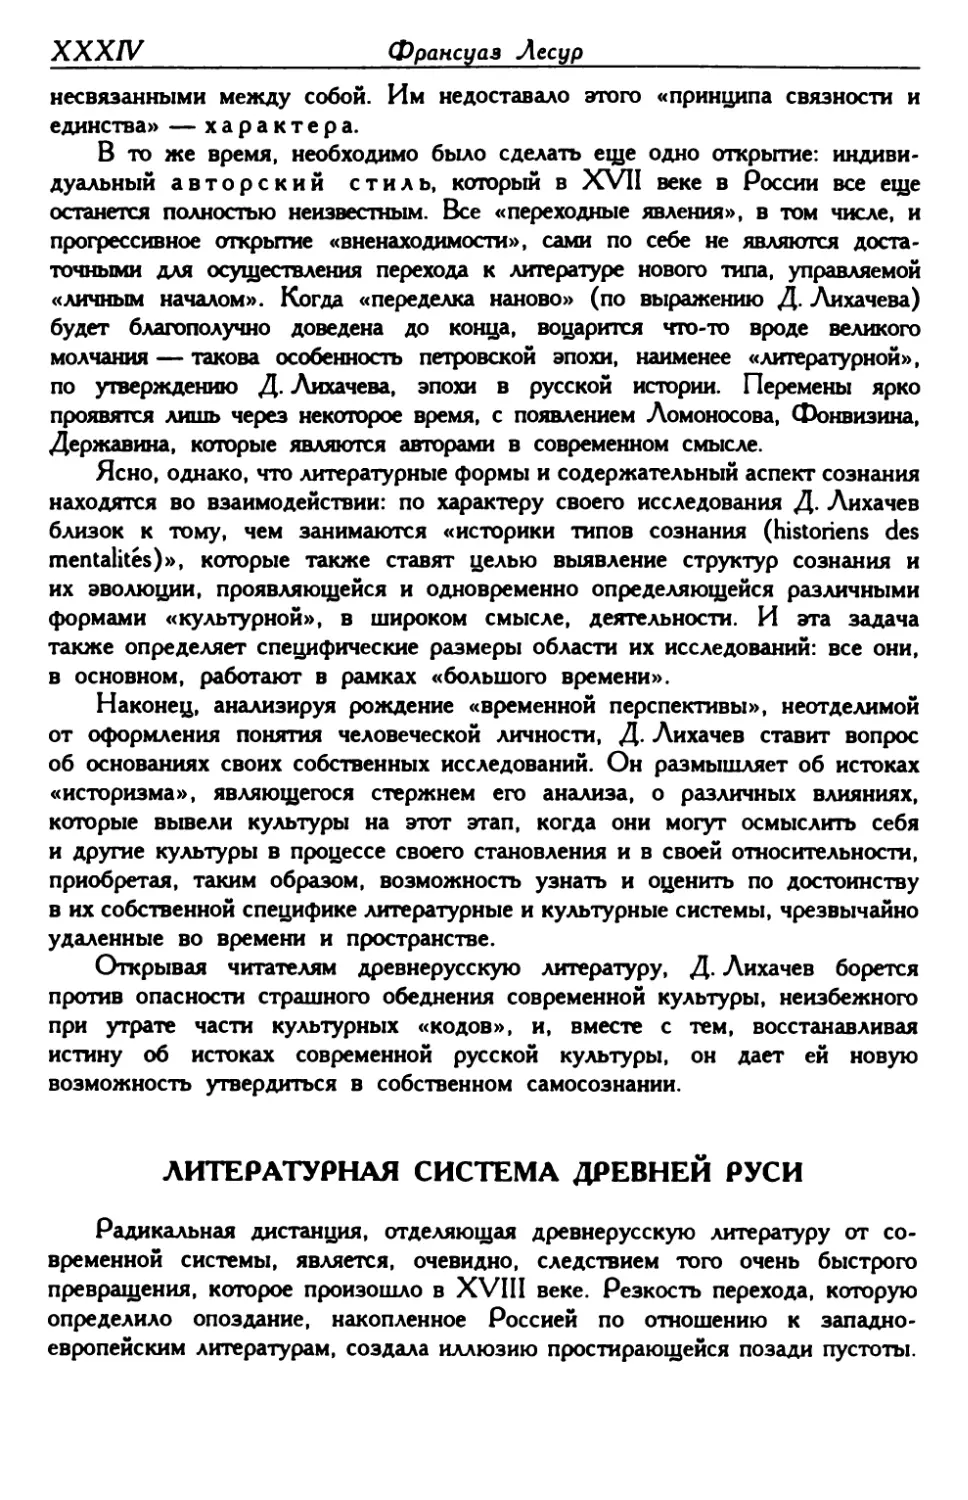 Литературная система древней Руси